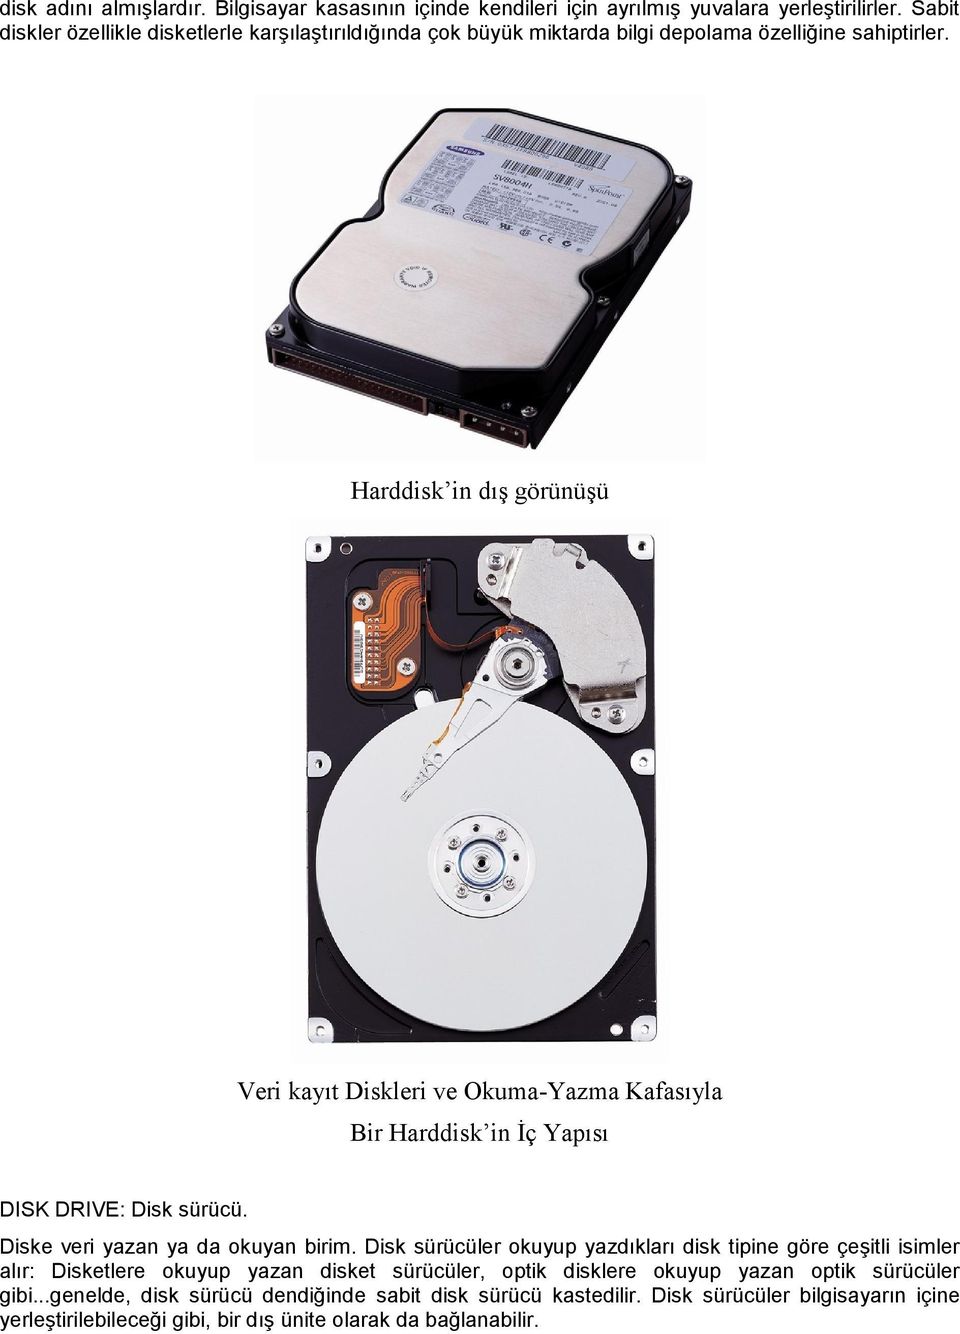 Harddisk in dış görünüşü Veri kayıt Diskleri ve Okuma-Yazma Kafasıyla Bir Harddisk in İç Yapısı DISK DRIVE: Disk sürücü. Diske veri yazan ya da okuyan birim.